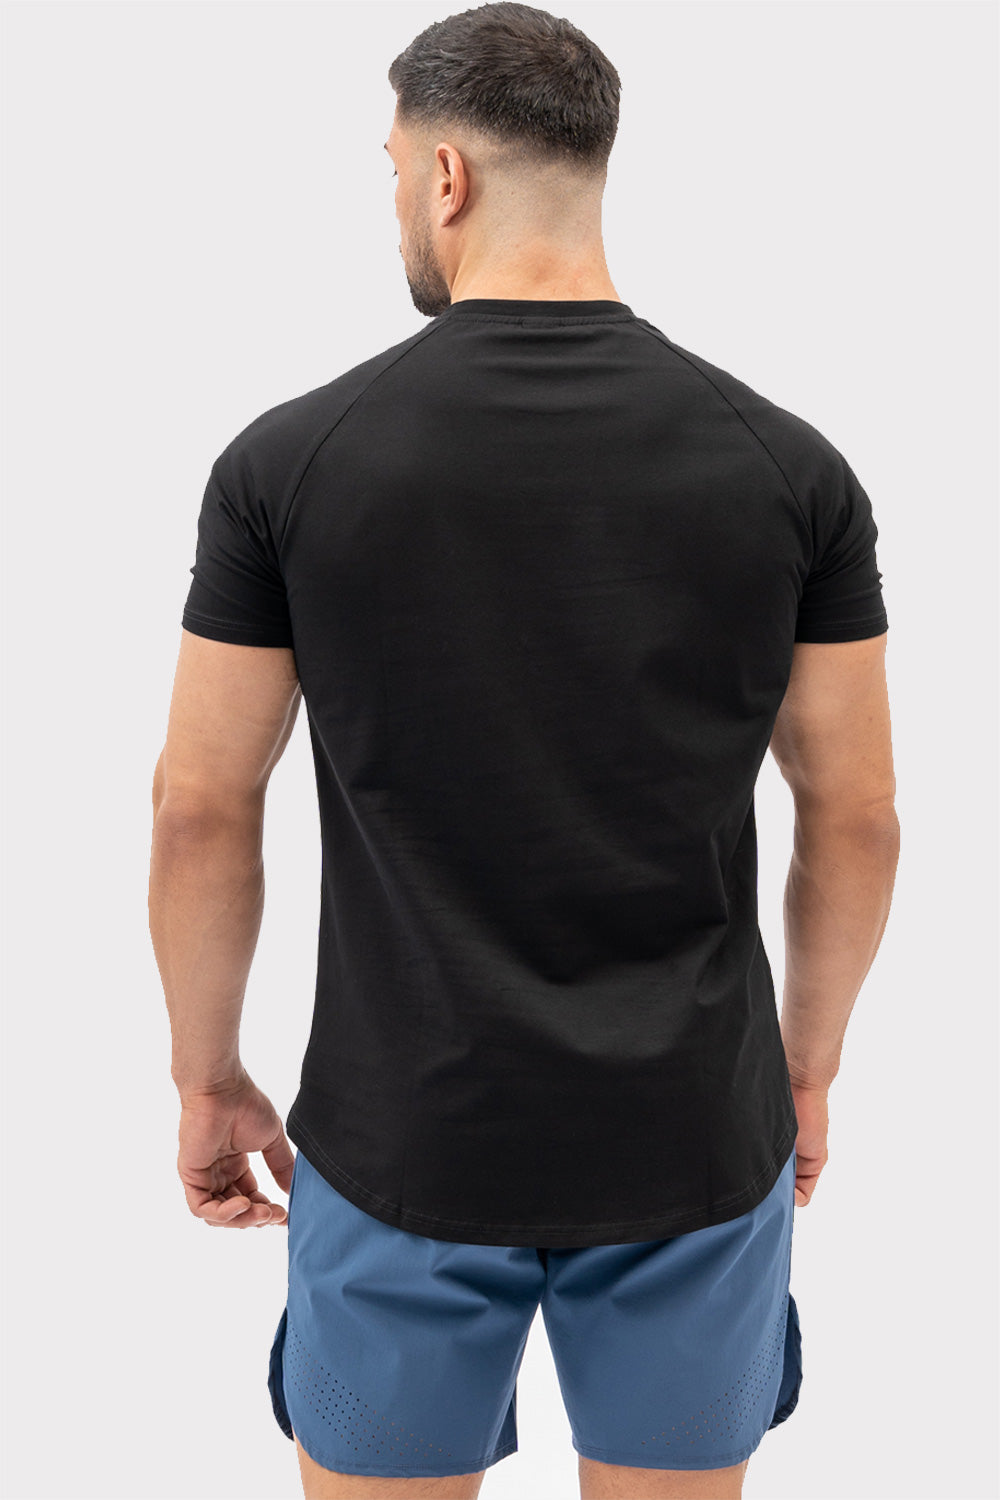 A CODE T-Shirt - Noir